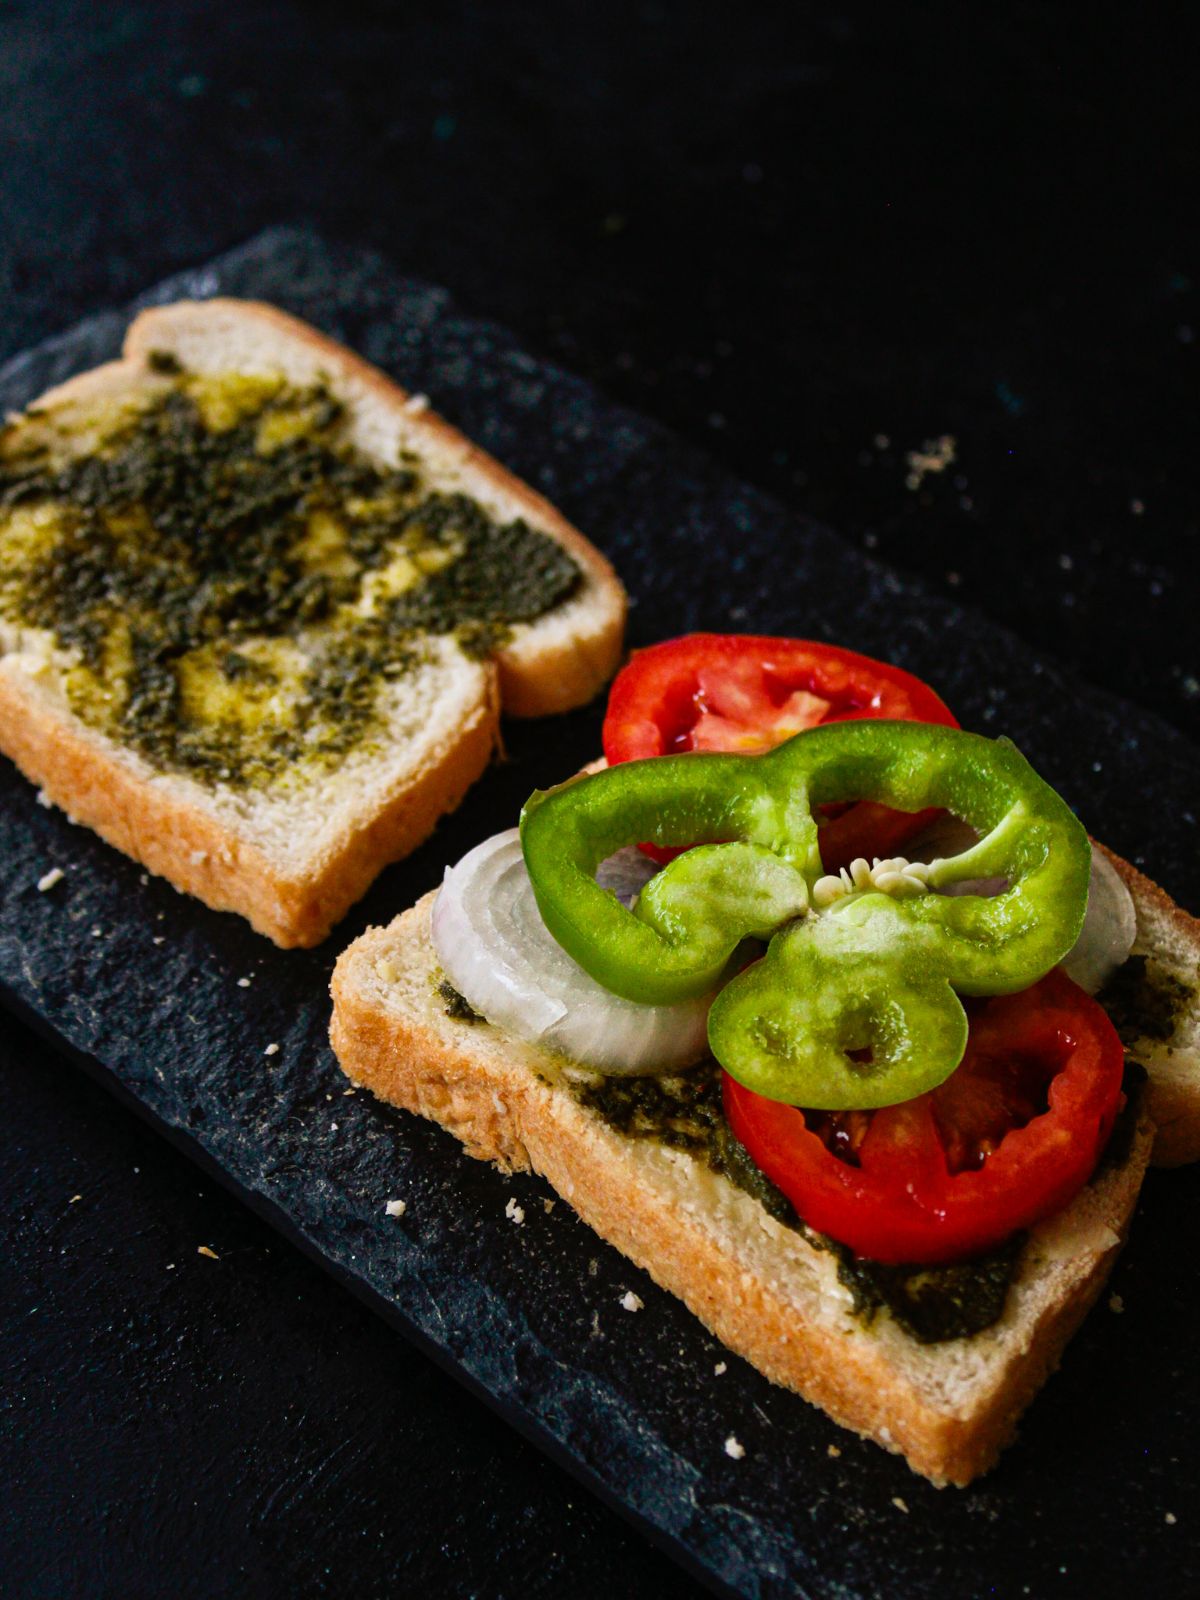 кольцо зеленого перца поверх помидора на ломтиках сэндвича